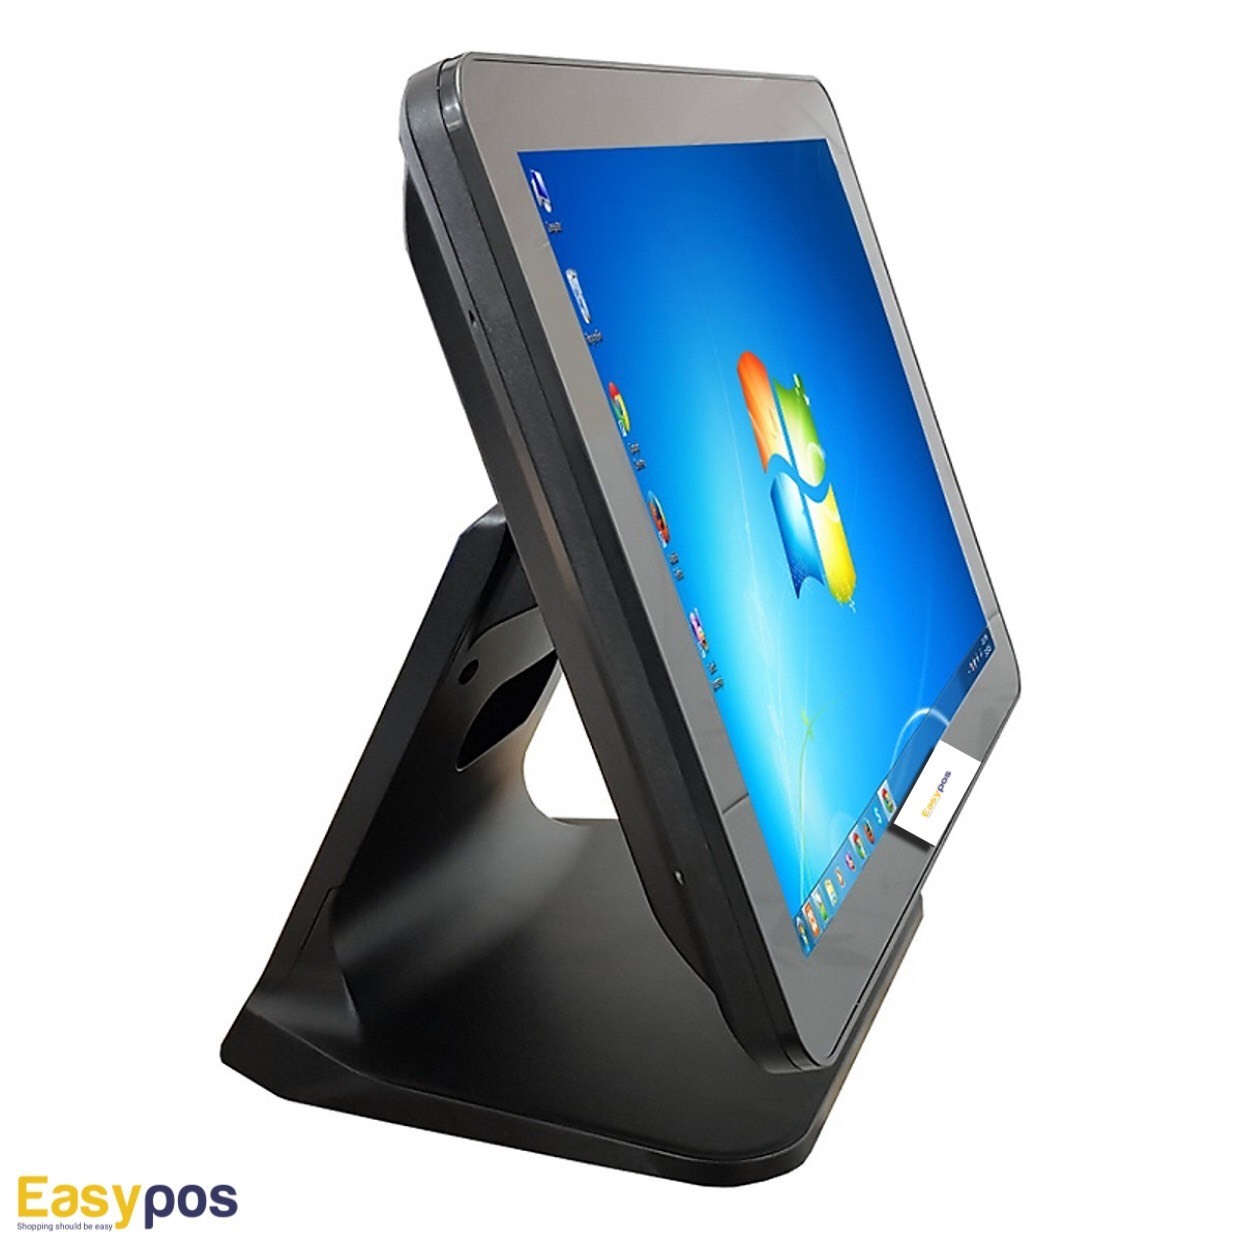 Máy pos cảm ứng bán hàng 1 màn hình EasyPOS E51